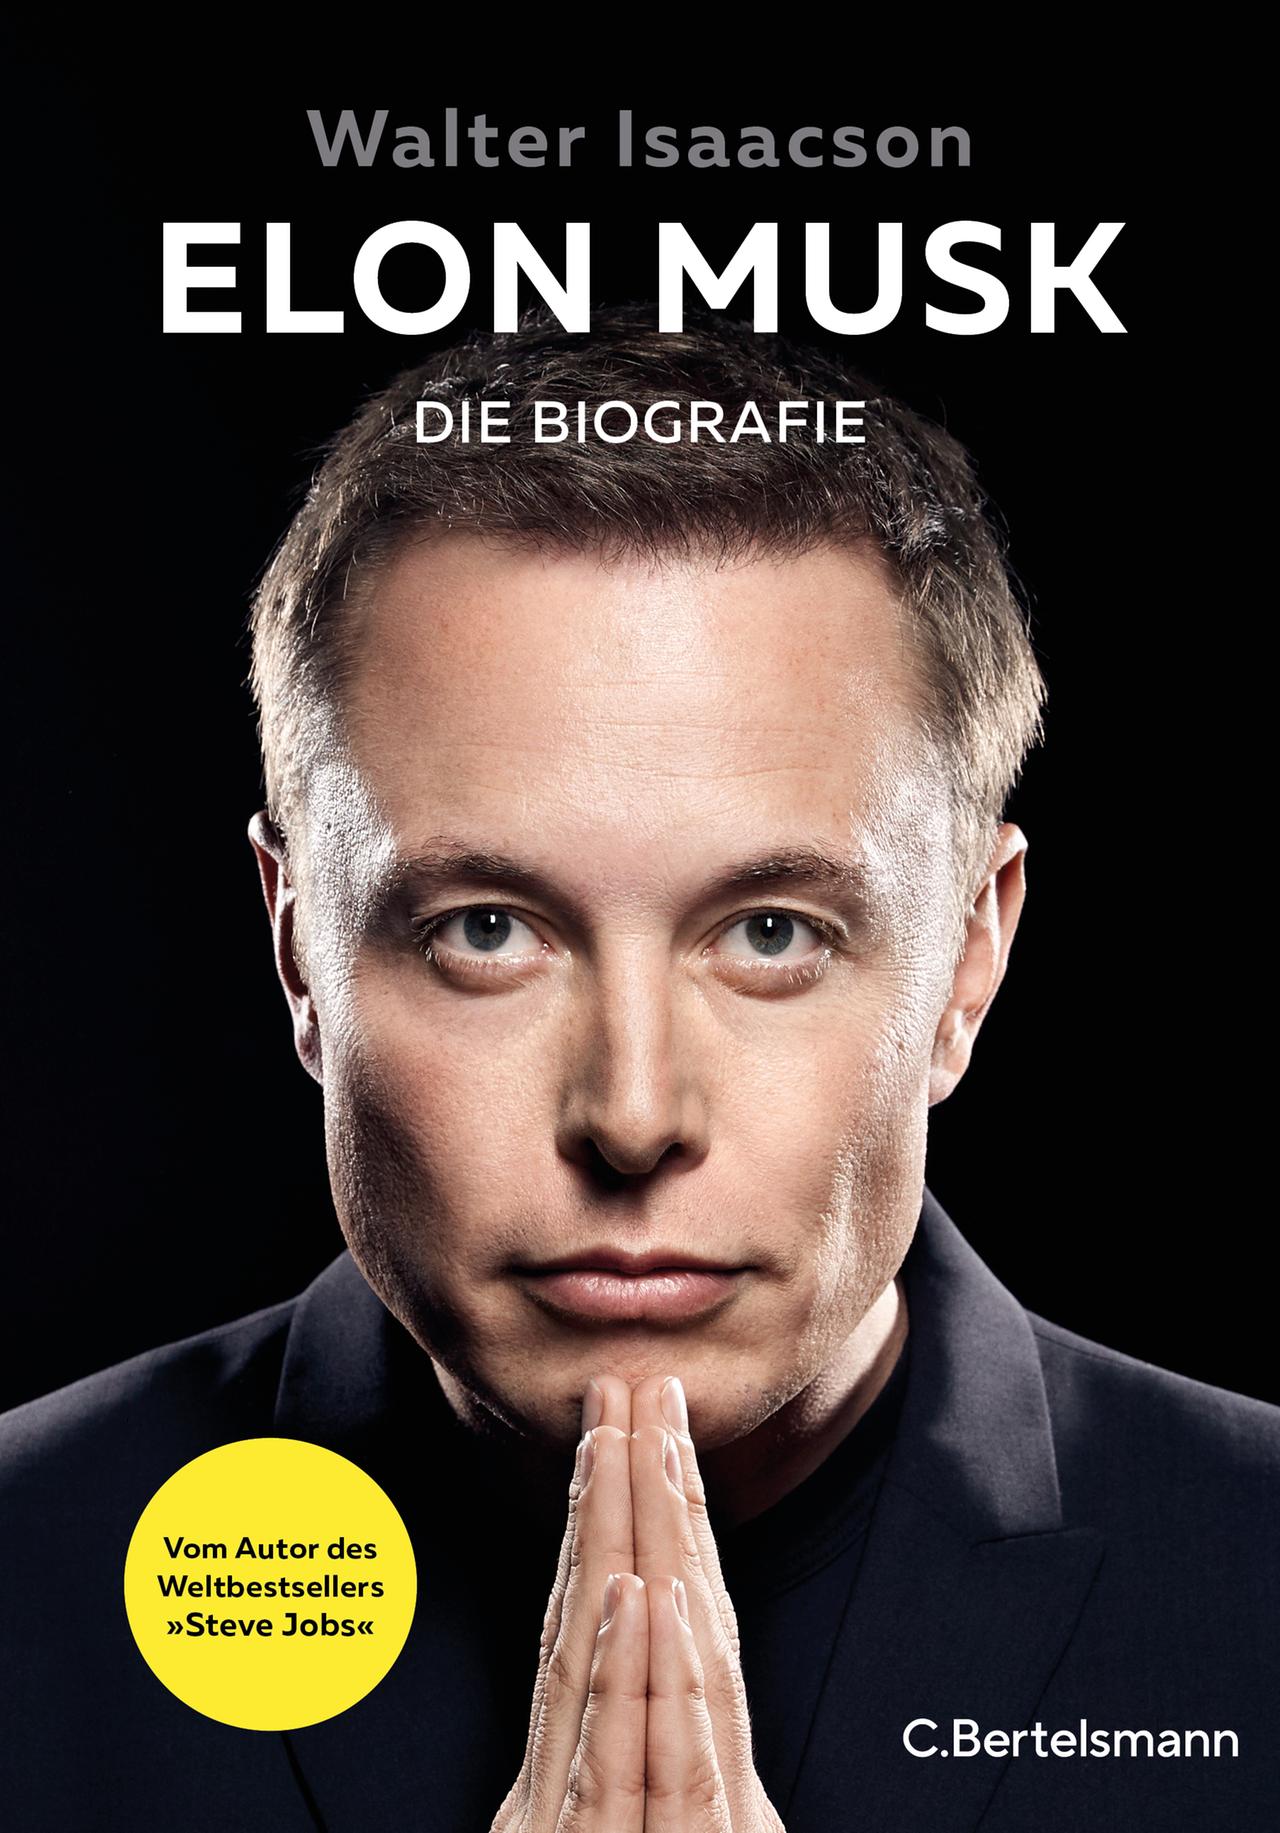 Elon Musk stellt neues Kompakt-Modell aus Deutschland in Aussicht